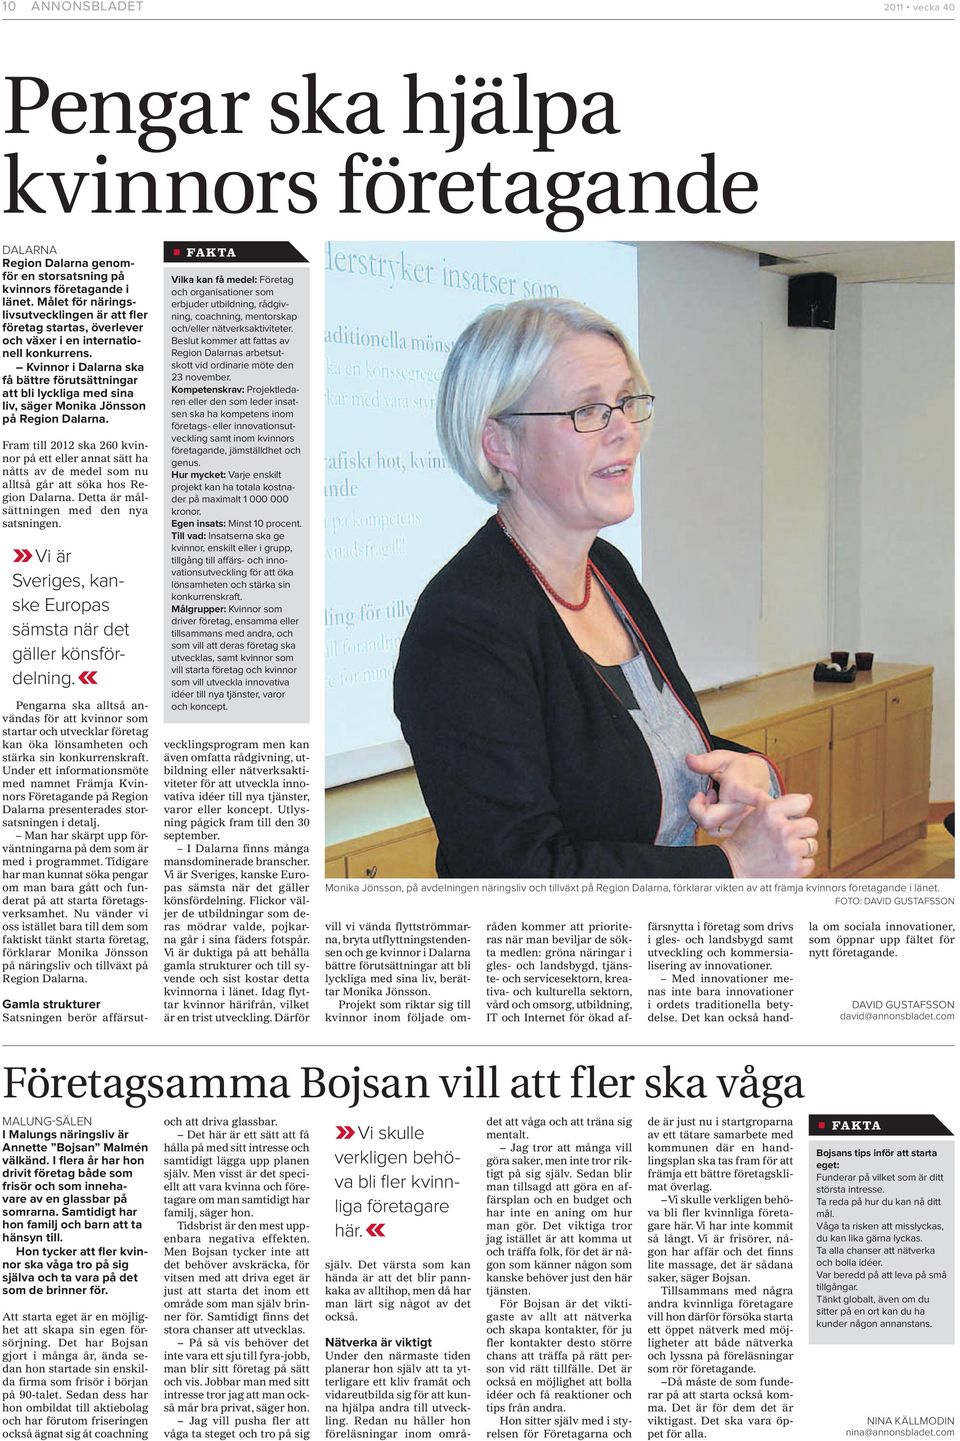 Kvinnor i Dalarna ska få bättre förutsättningar att bli lyckliga med sina liv, säger Monika Jönsson på Region Dalarna.